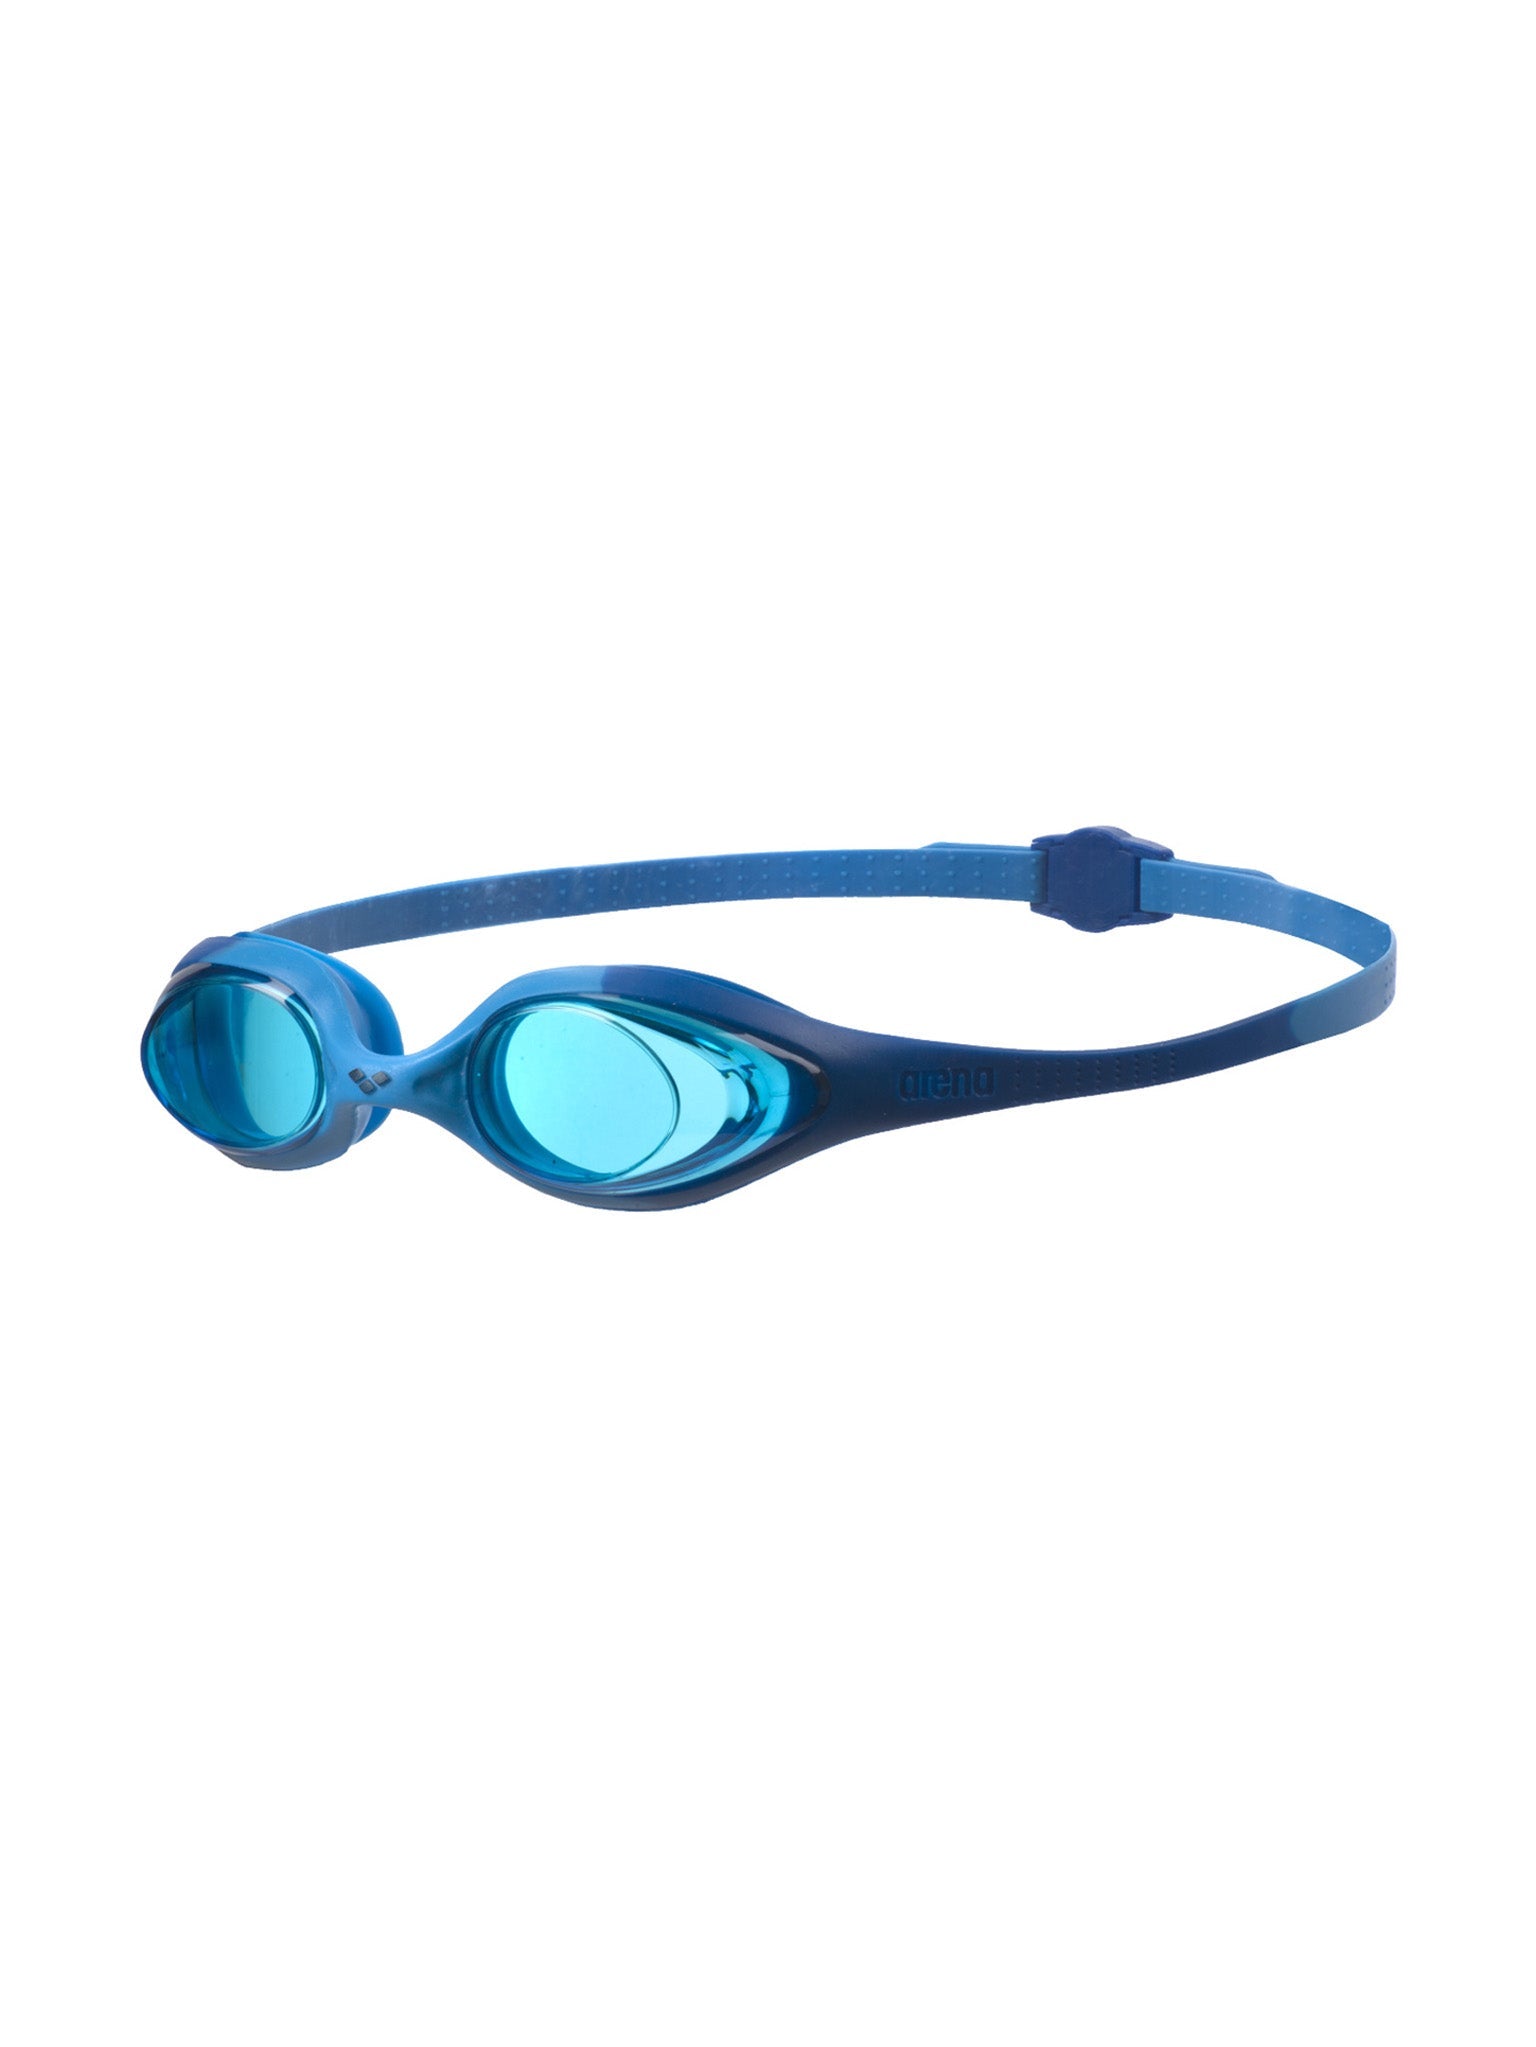 Junior Spider Swim Goggles - Blue/Blue